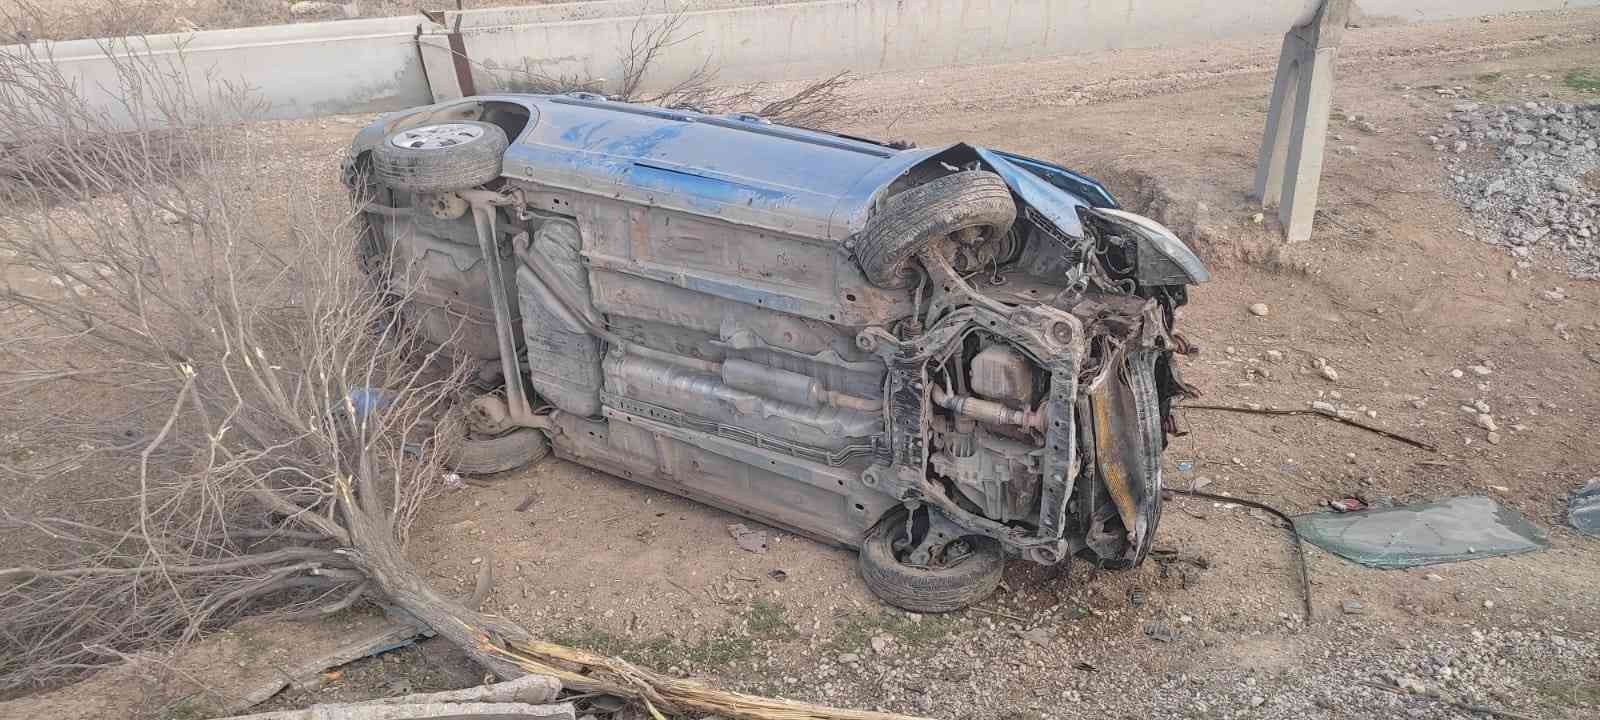 Konya’da Kontrolden Çıkan Otomobil Takla Attı: 6 Yaralı